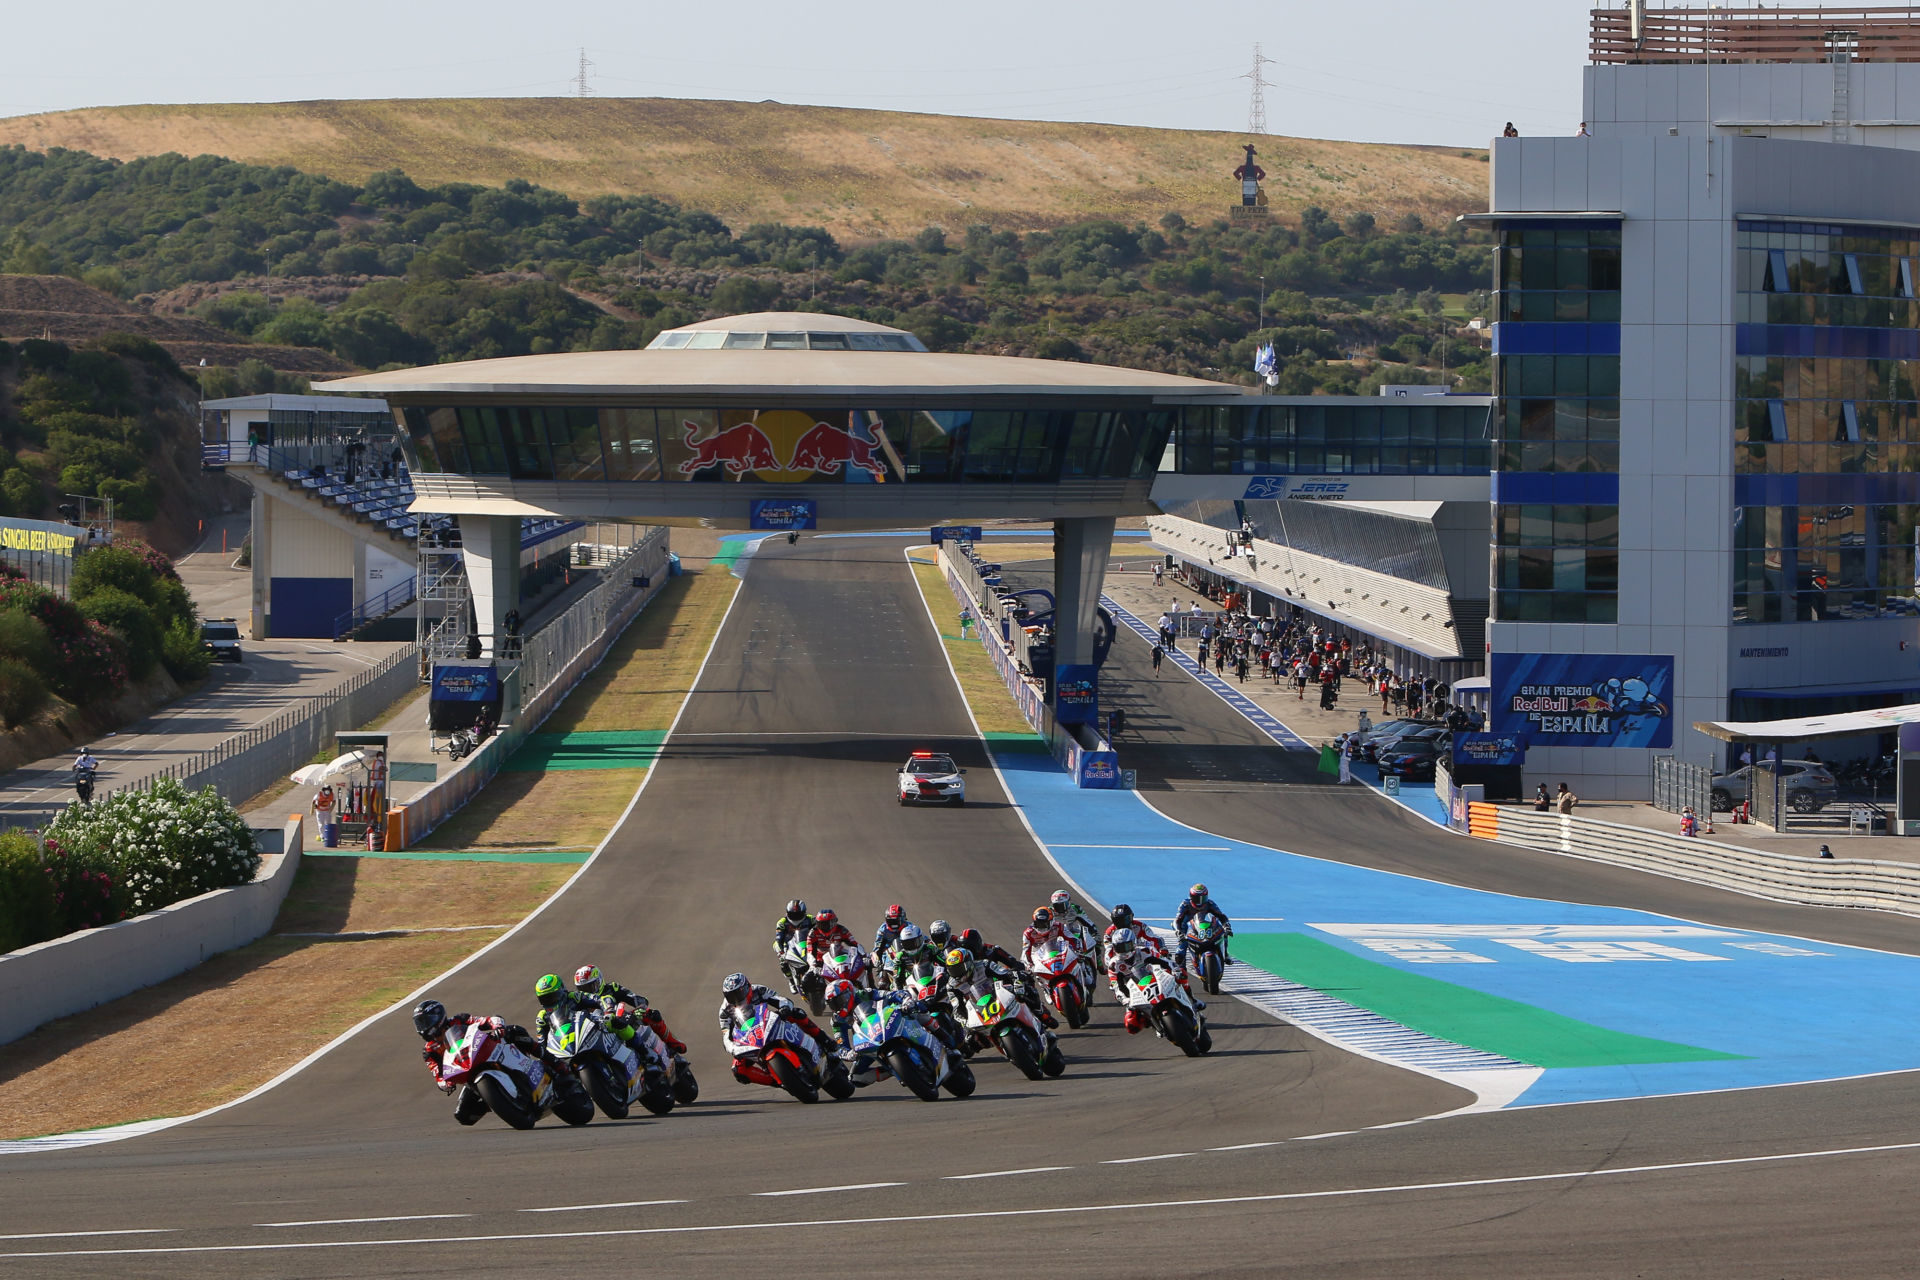 The start of the MotoE race at Jerez. Photo courtesy Dorna.